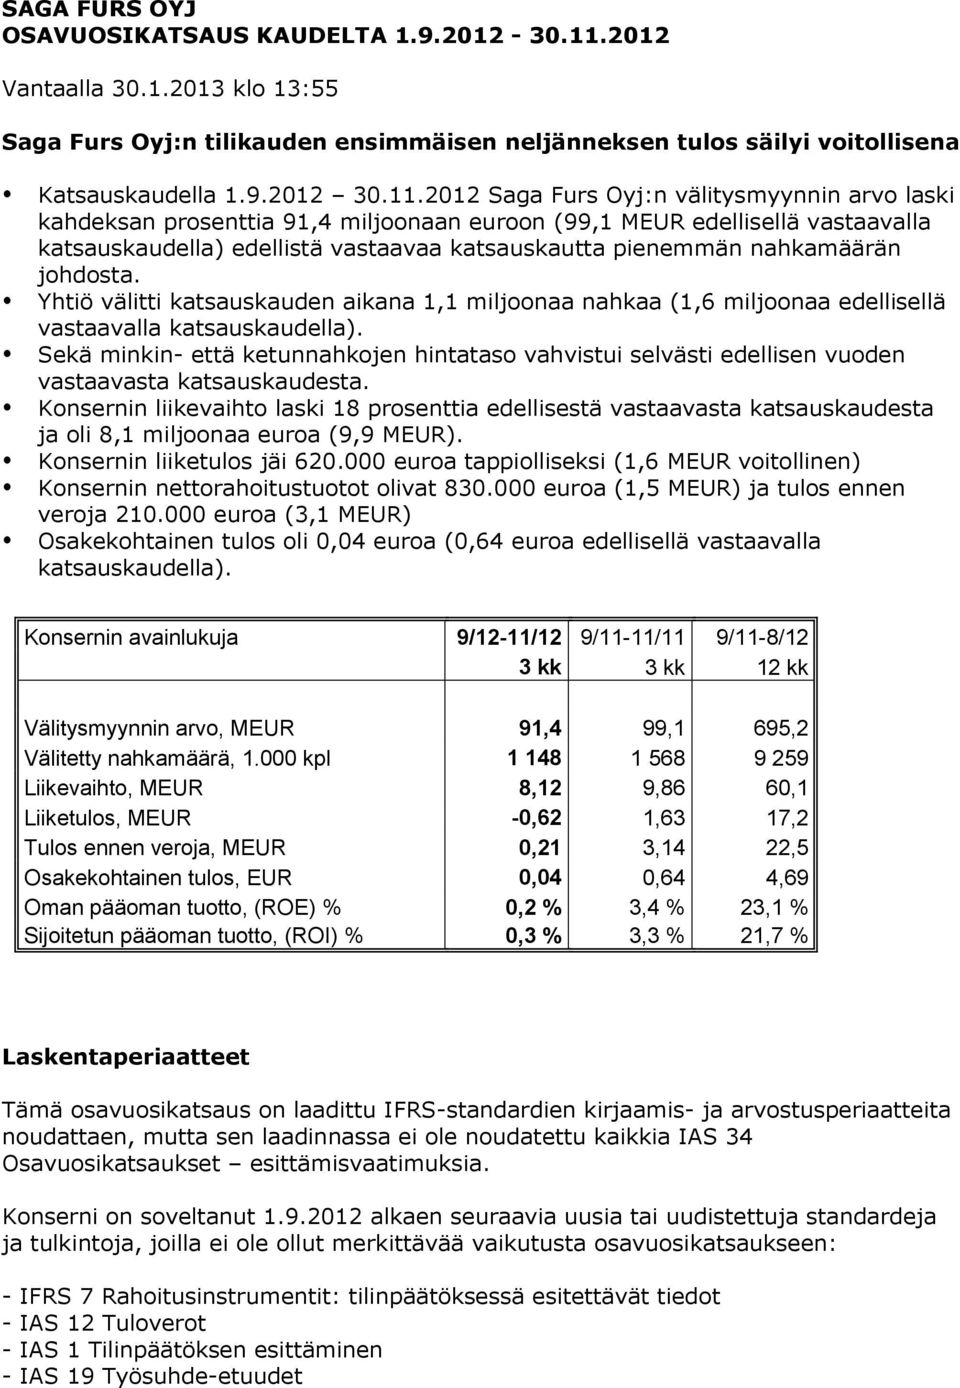 2012 Saga Furs Oyj:n välitysmyynnin arvo laski kahdeksan prosenttia 91,4 miljoonaan euroon (99,1 MEUR edellisellä vastaavalla katsauskaudella) edellistä vastaavaa katsauskautta pienemmän nahkamäärän